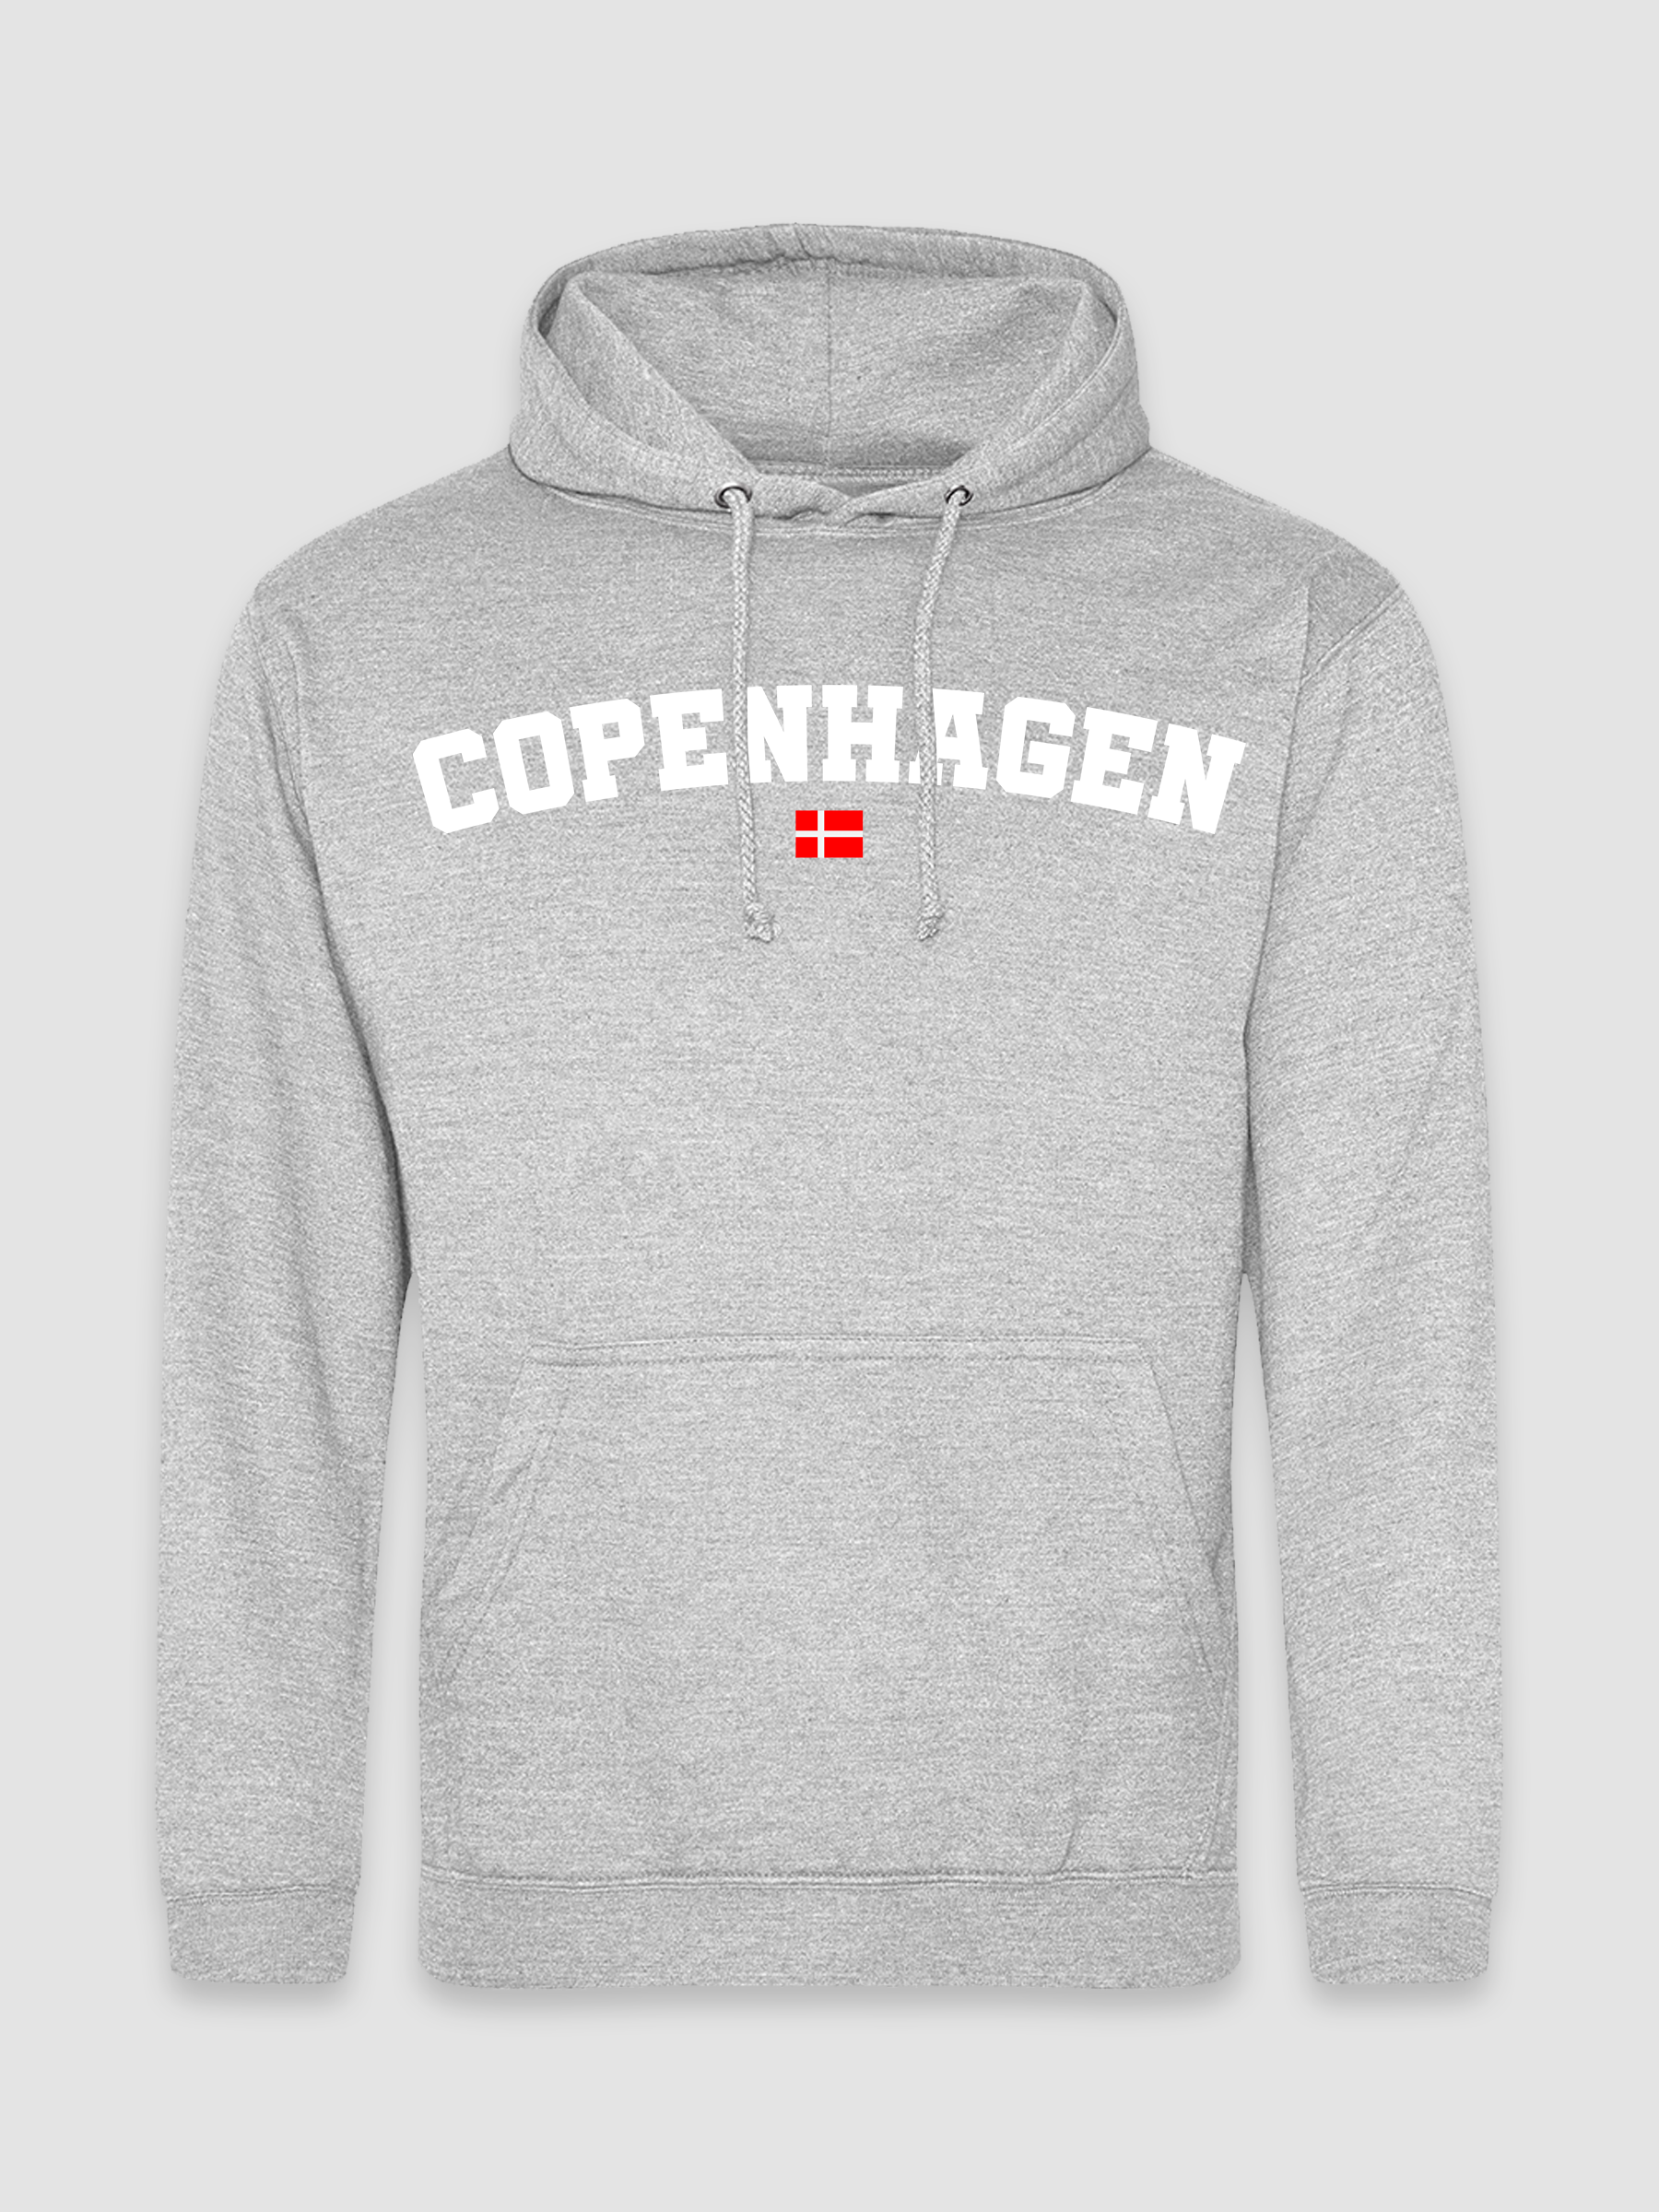 Copenhagen - Himmelblå Hoodie